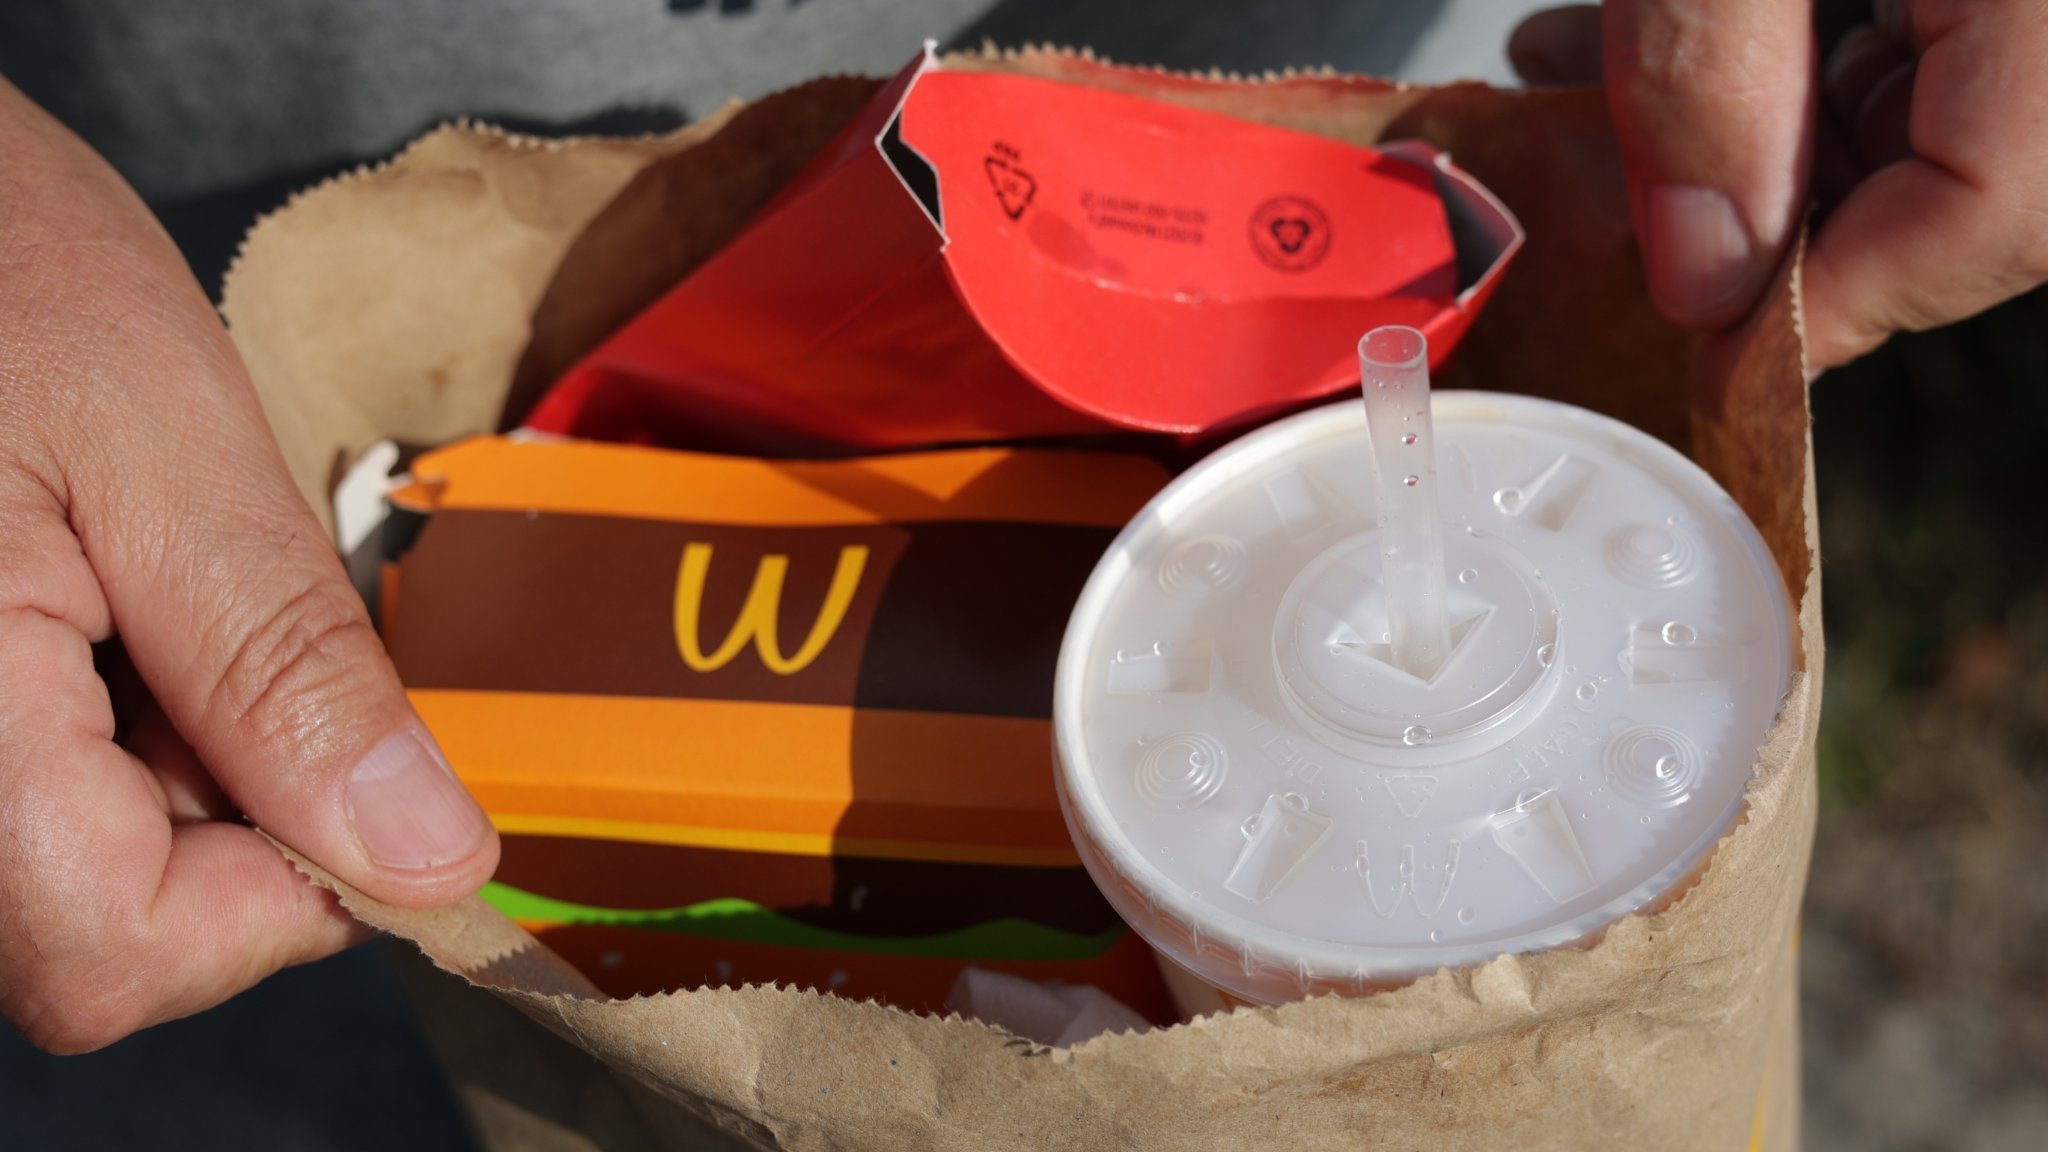 Eine McDonald's-Tüte mit McDonald's-Produkten in Verpackungen